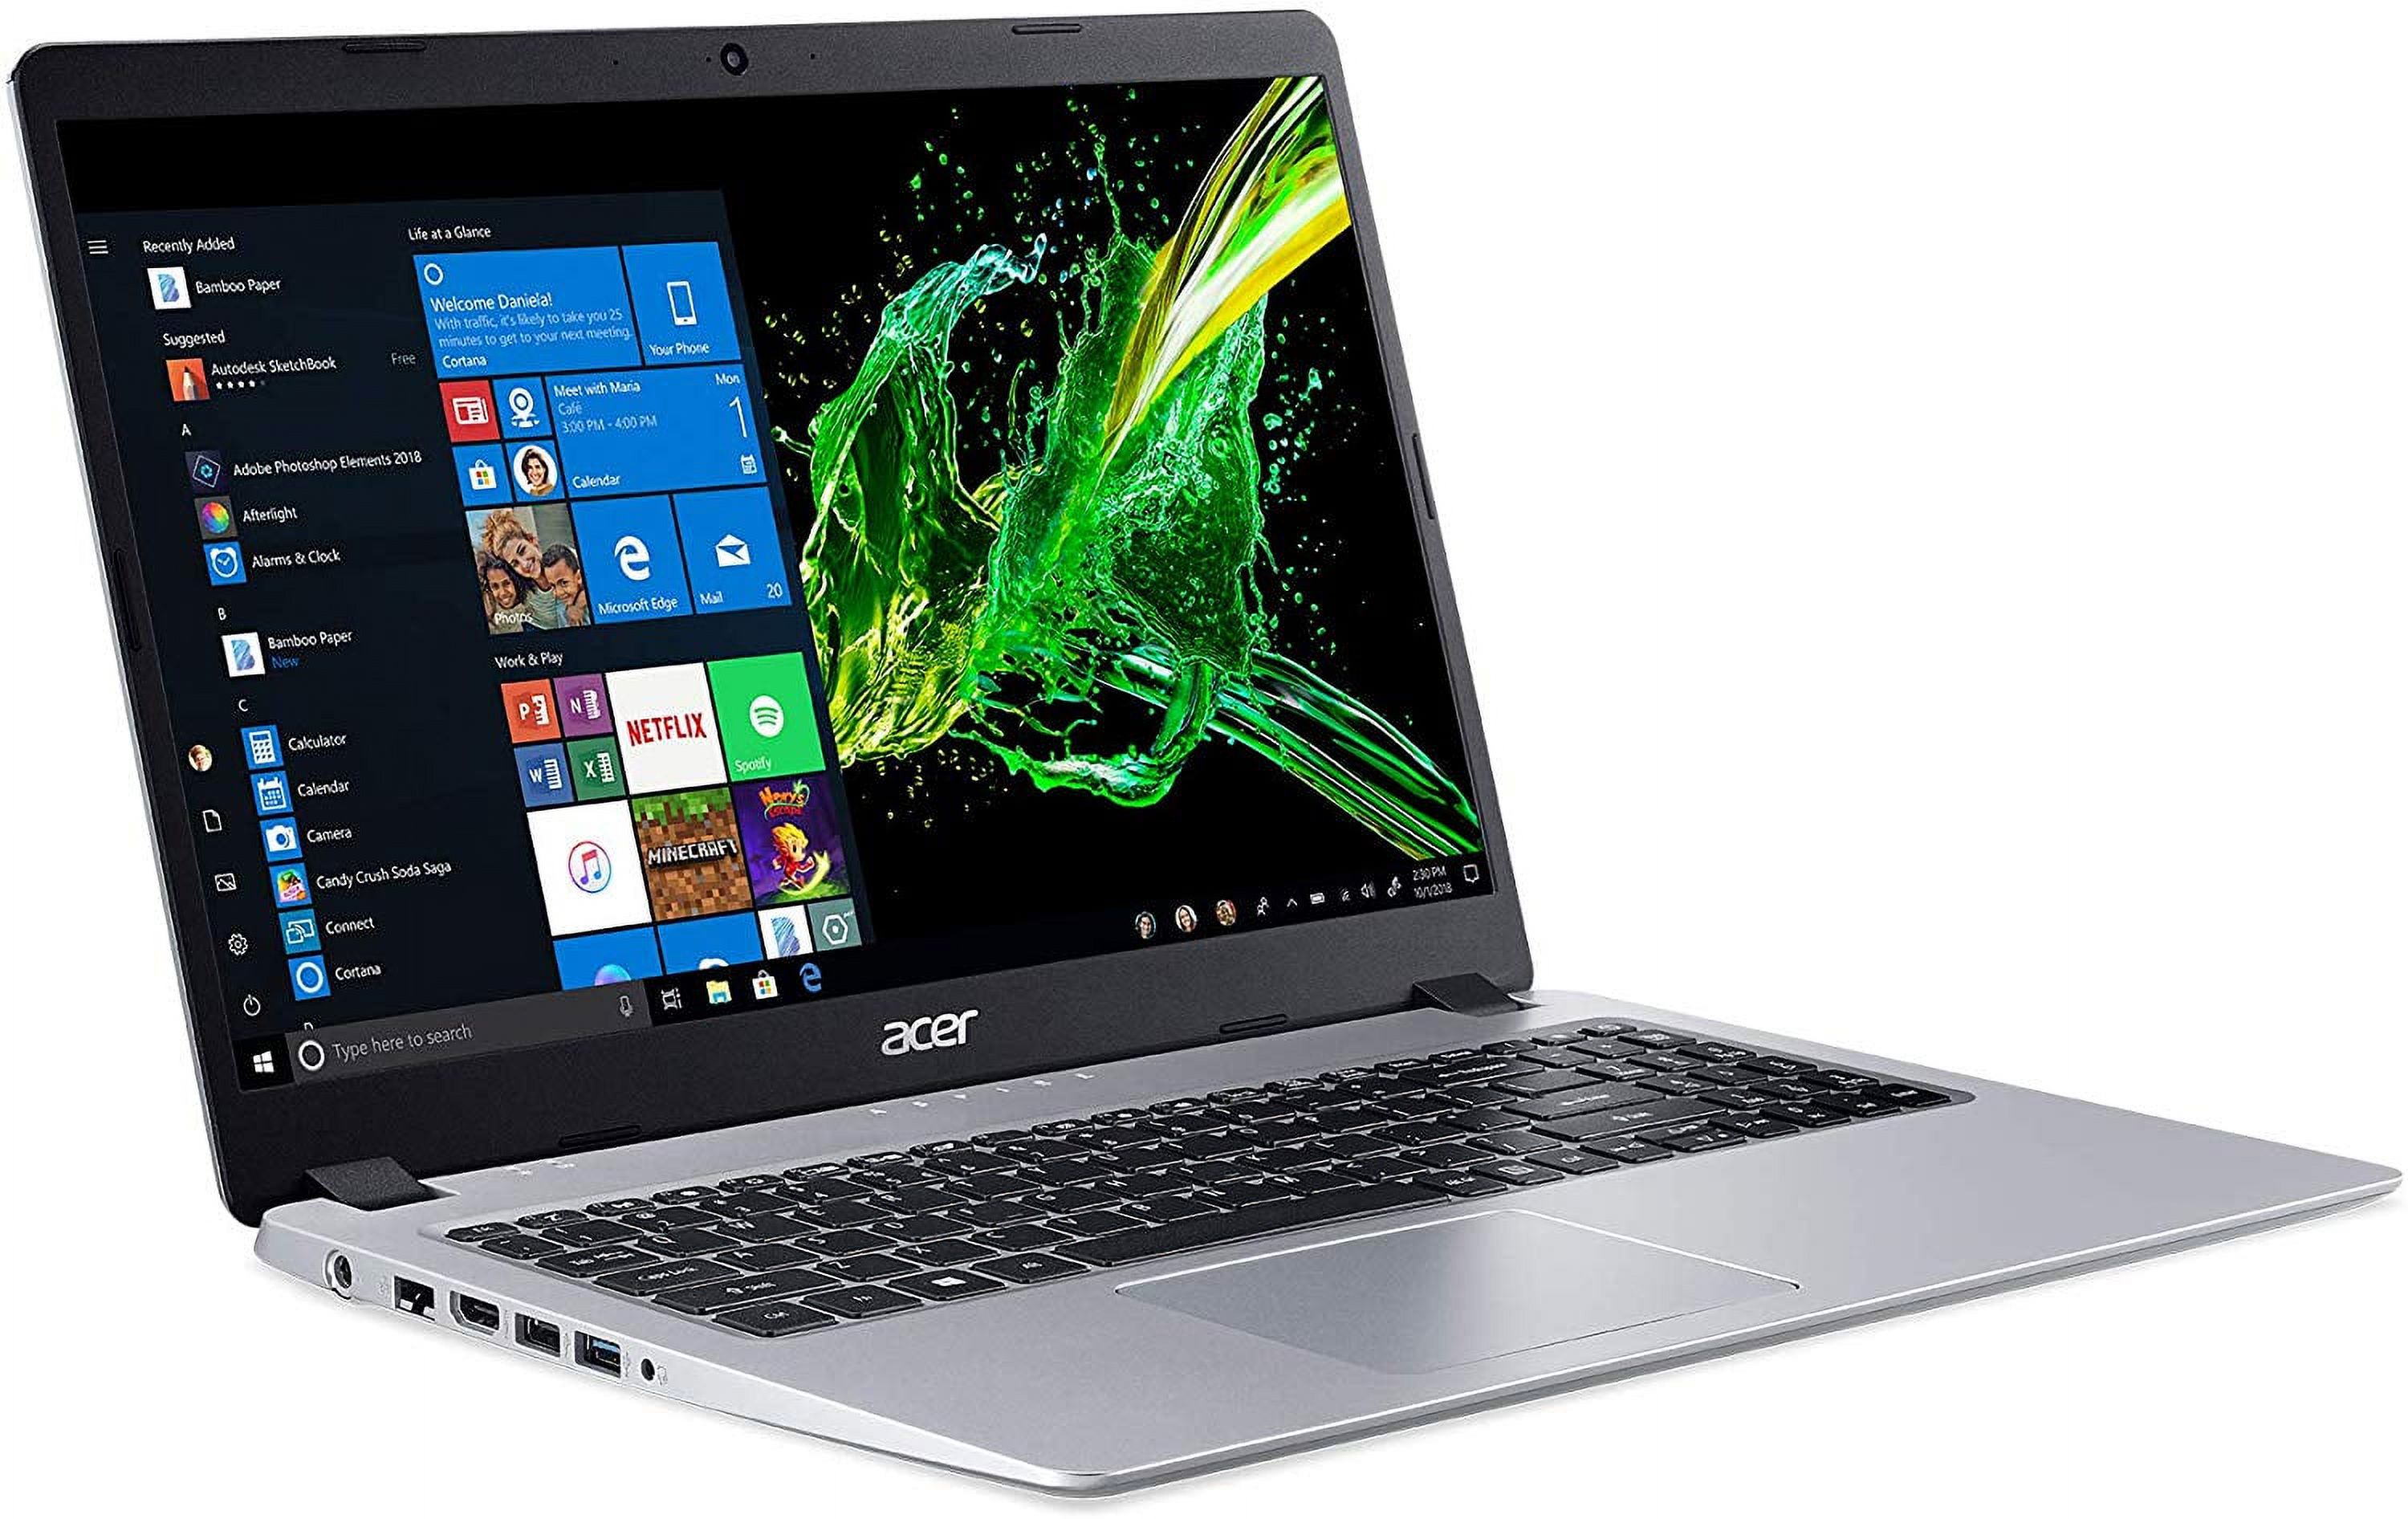 Acer Aspire 5 15.6" FHD PC Laptop, AMD Ryzen 3 3200U, 4GB RAM, 128GB SSD, Windows 10, Silver, A515-43-R19L - image 1 of 3